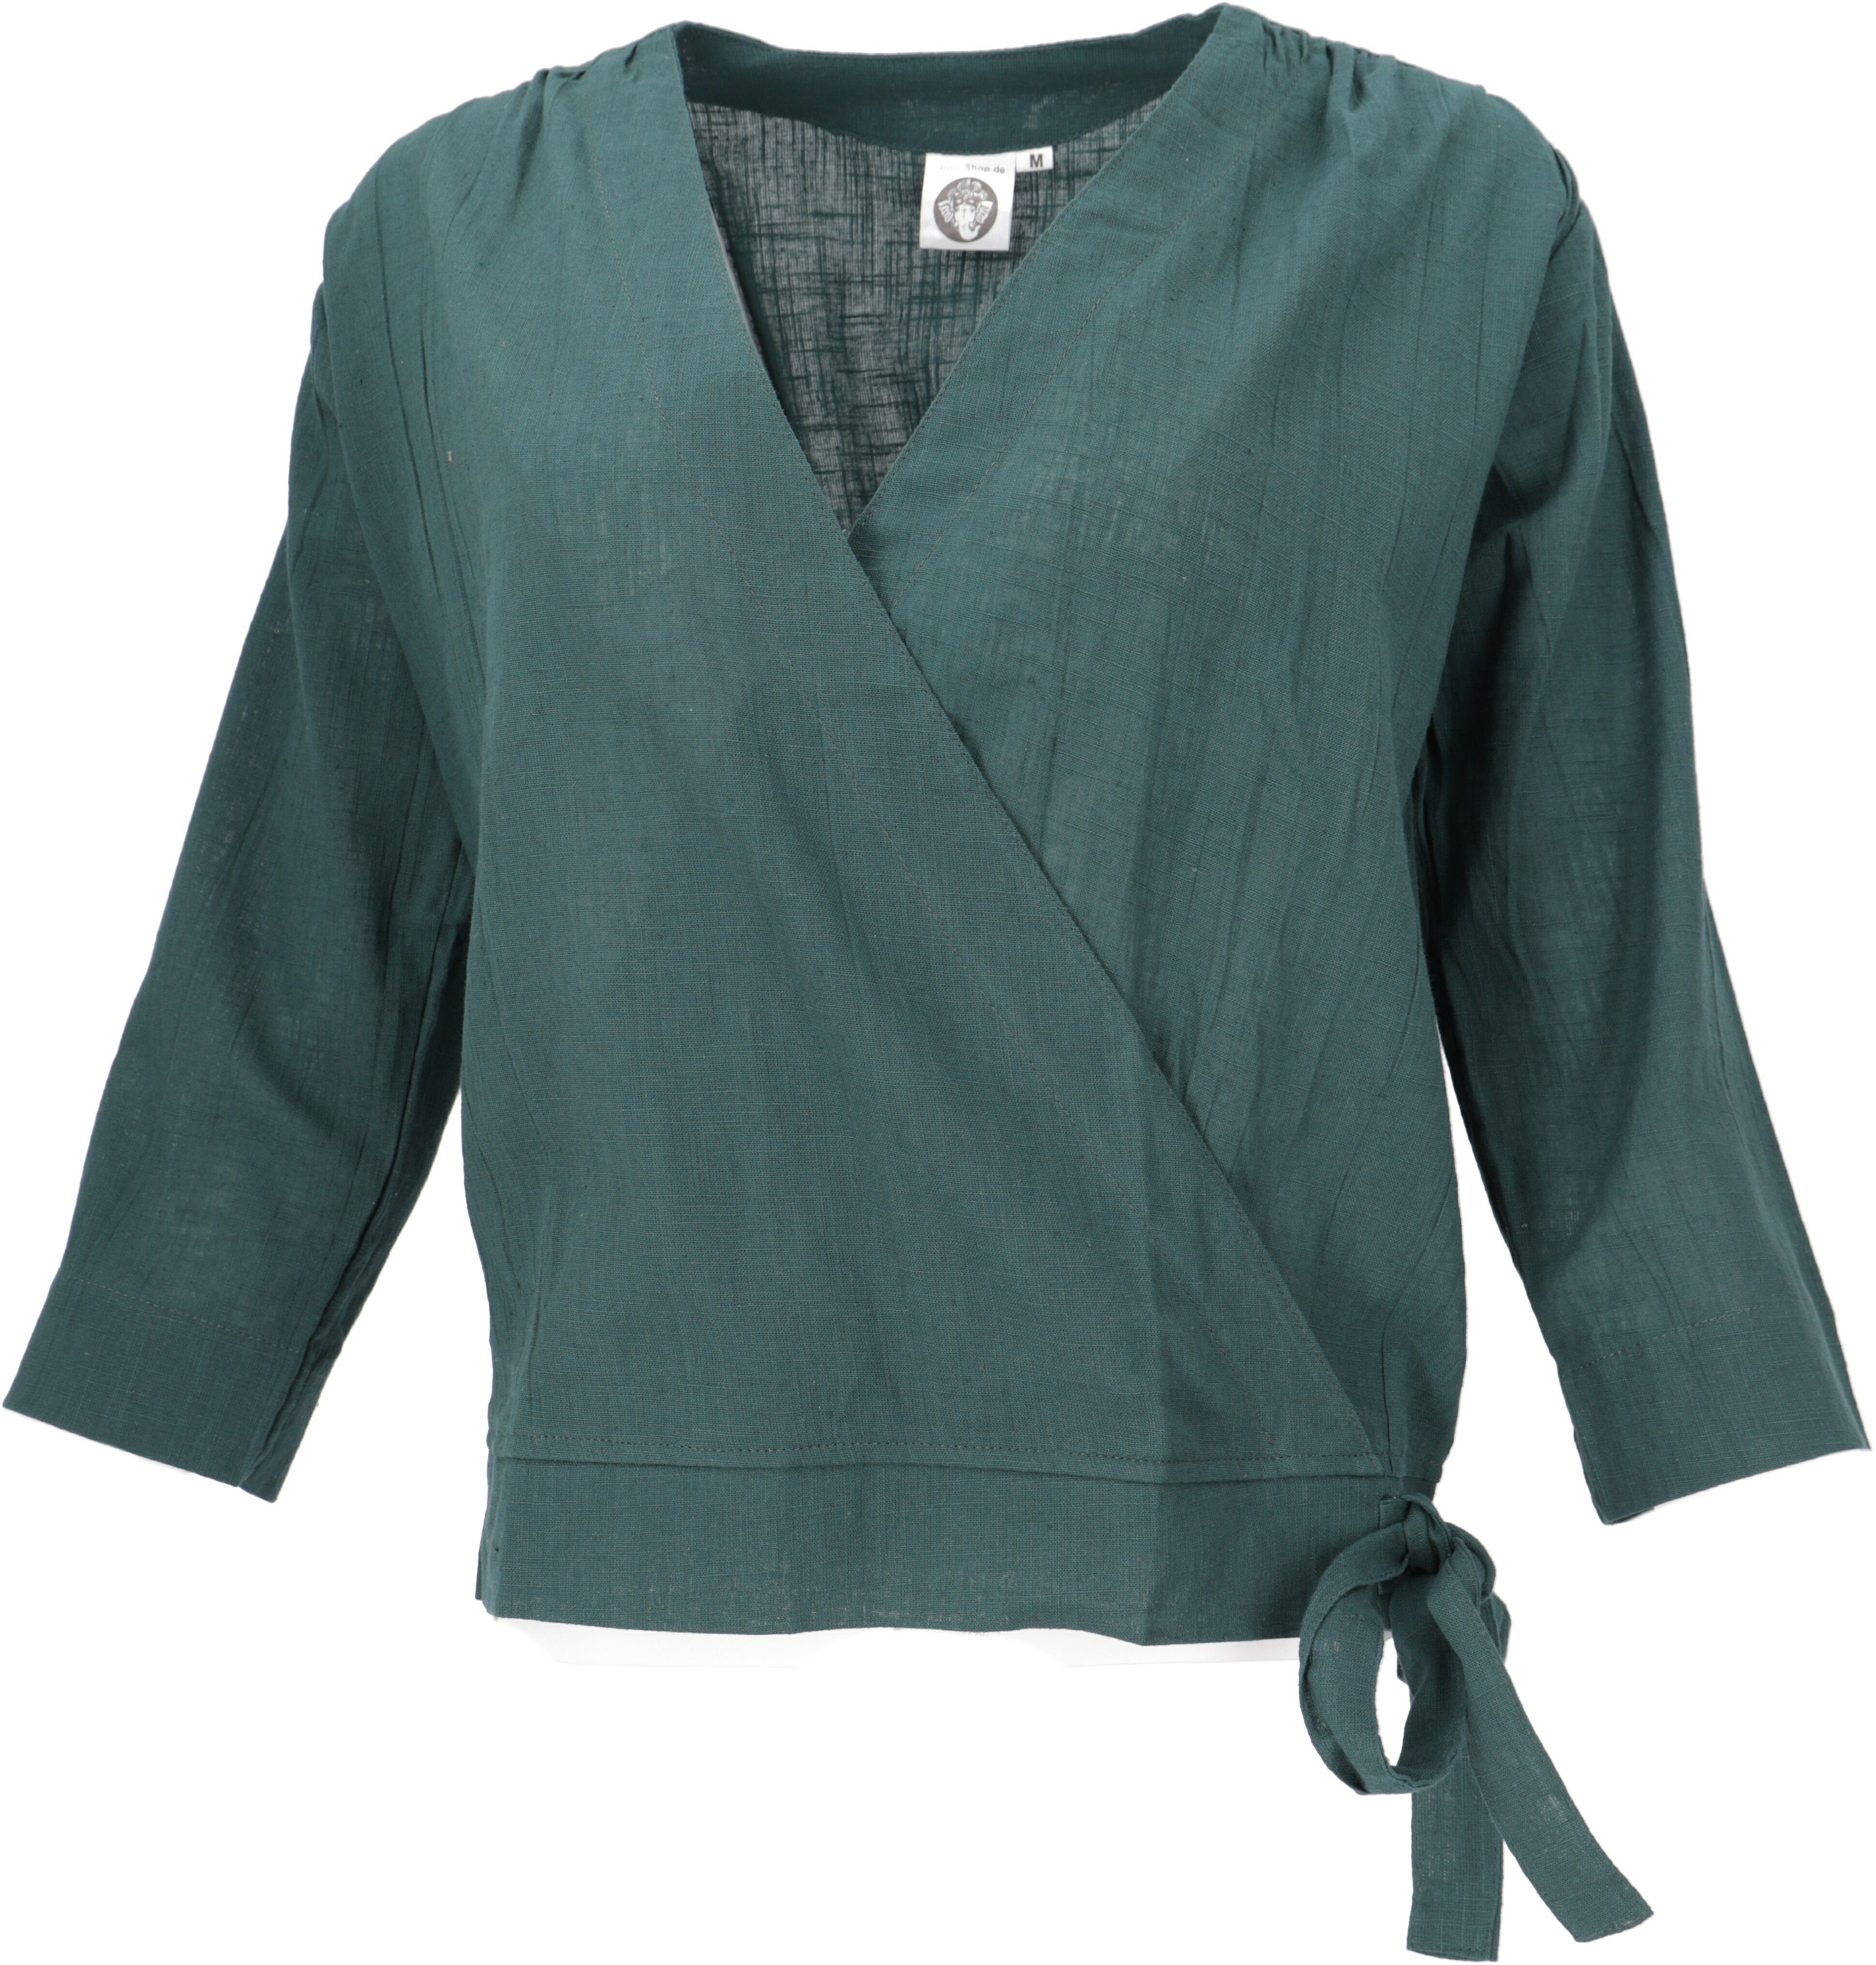 Sonderverkauf läuft Guru-Shop Longbluse Leichte Baumwoll Bluse, in.. alternative grün Bekleidung Sommerbluse